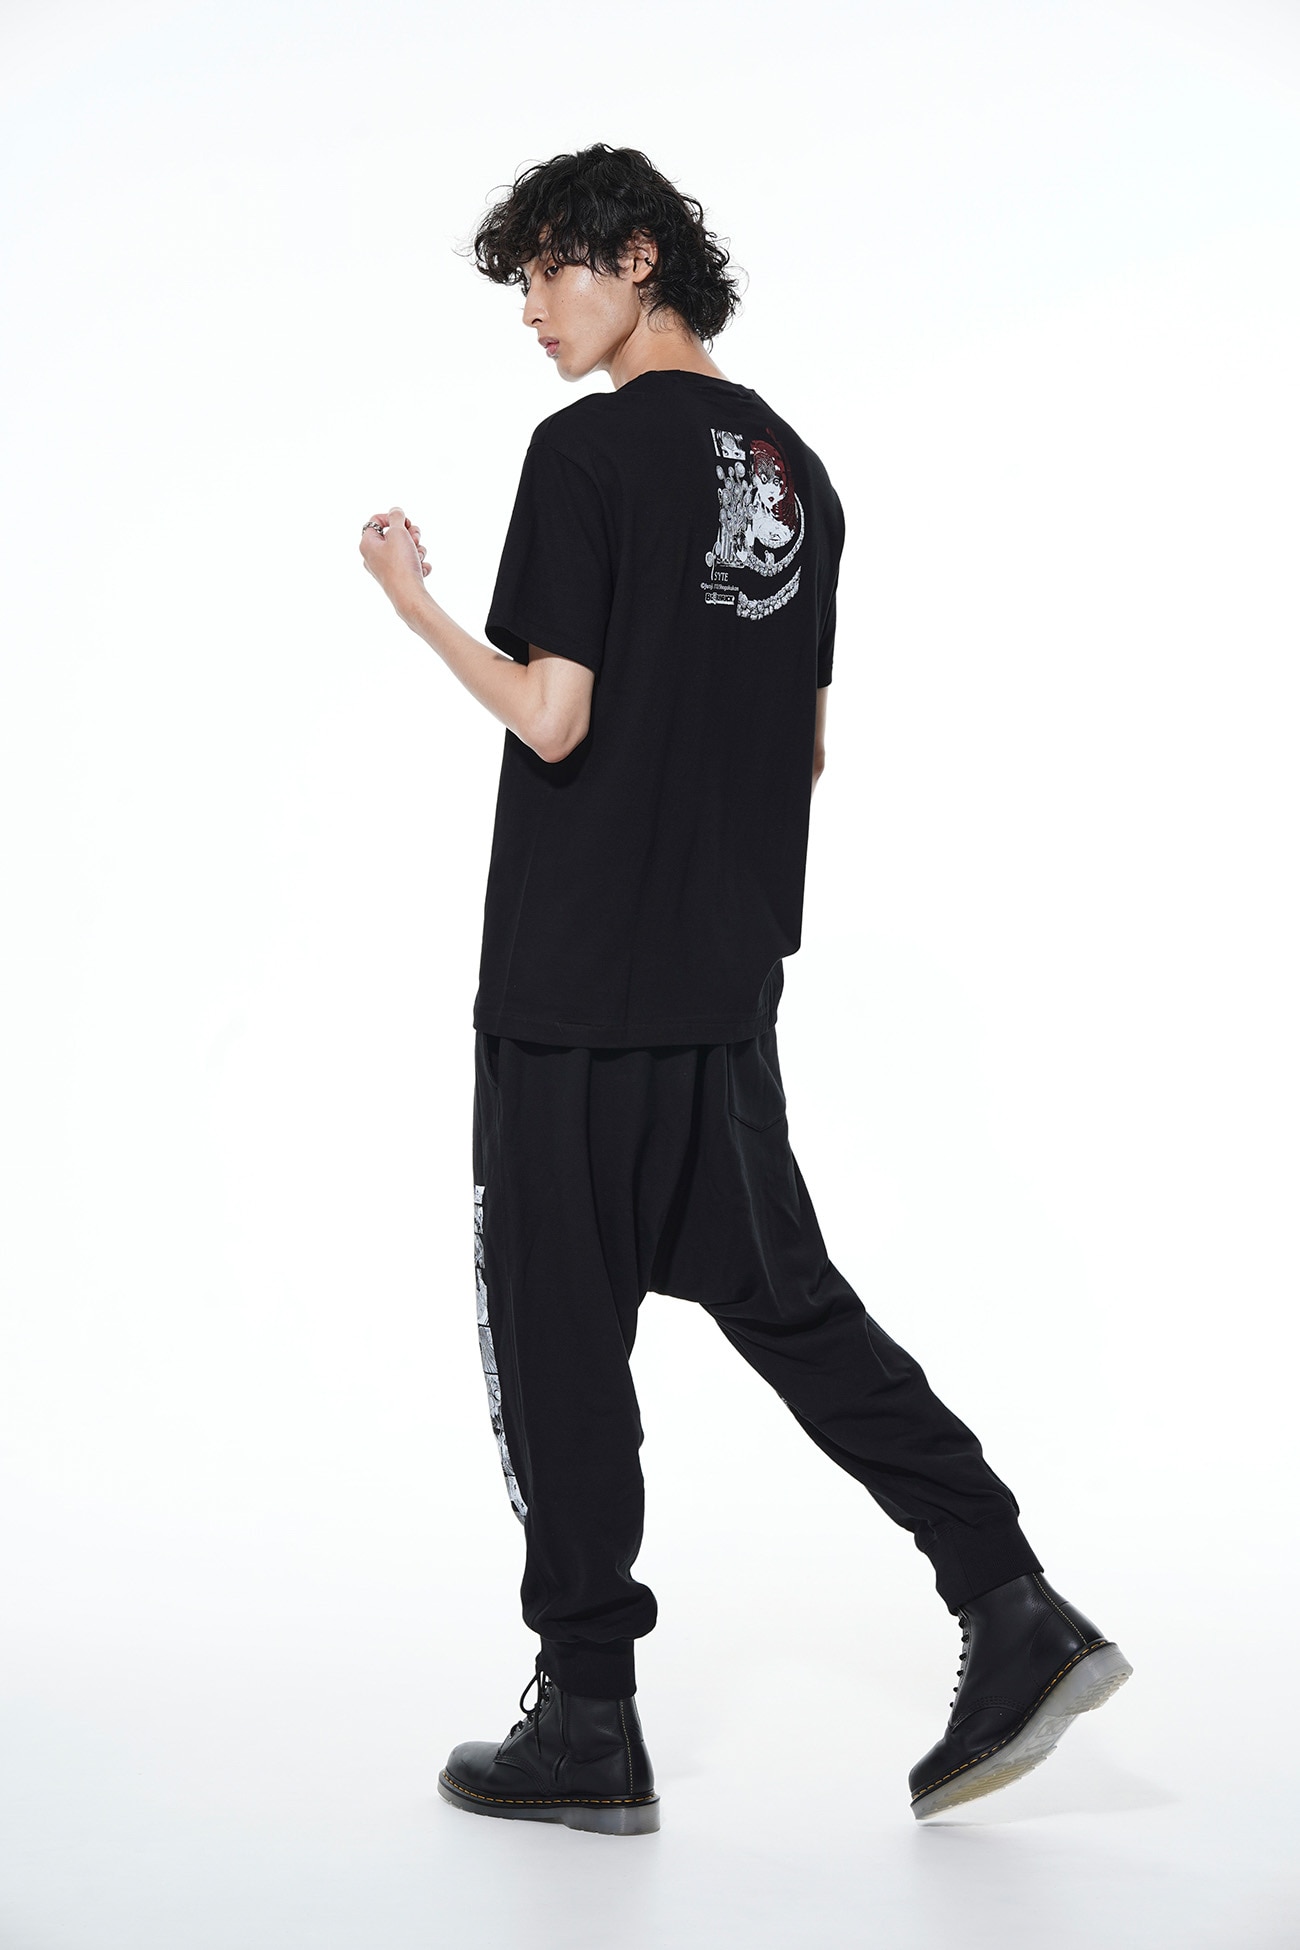 【8/25 12:00発売】BE@RBRICK × Junji ITO Uzumaki OmnibusT-shirt